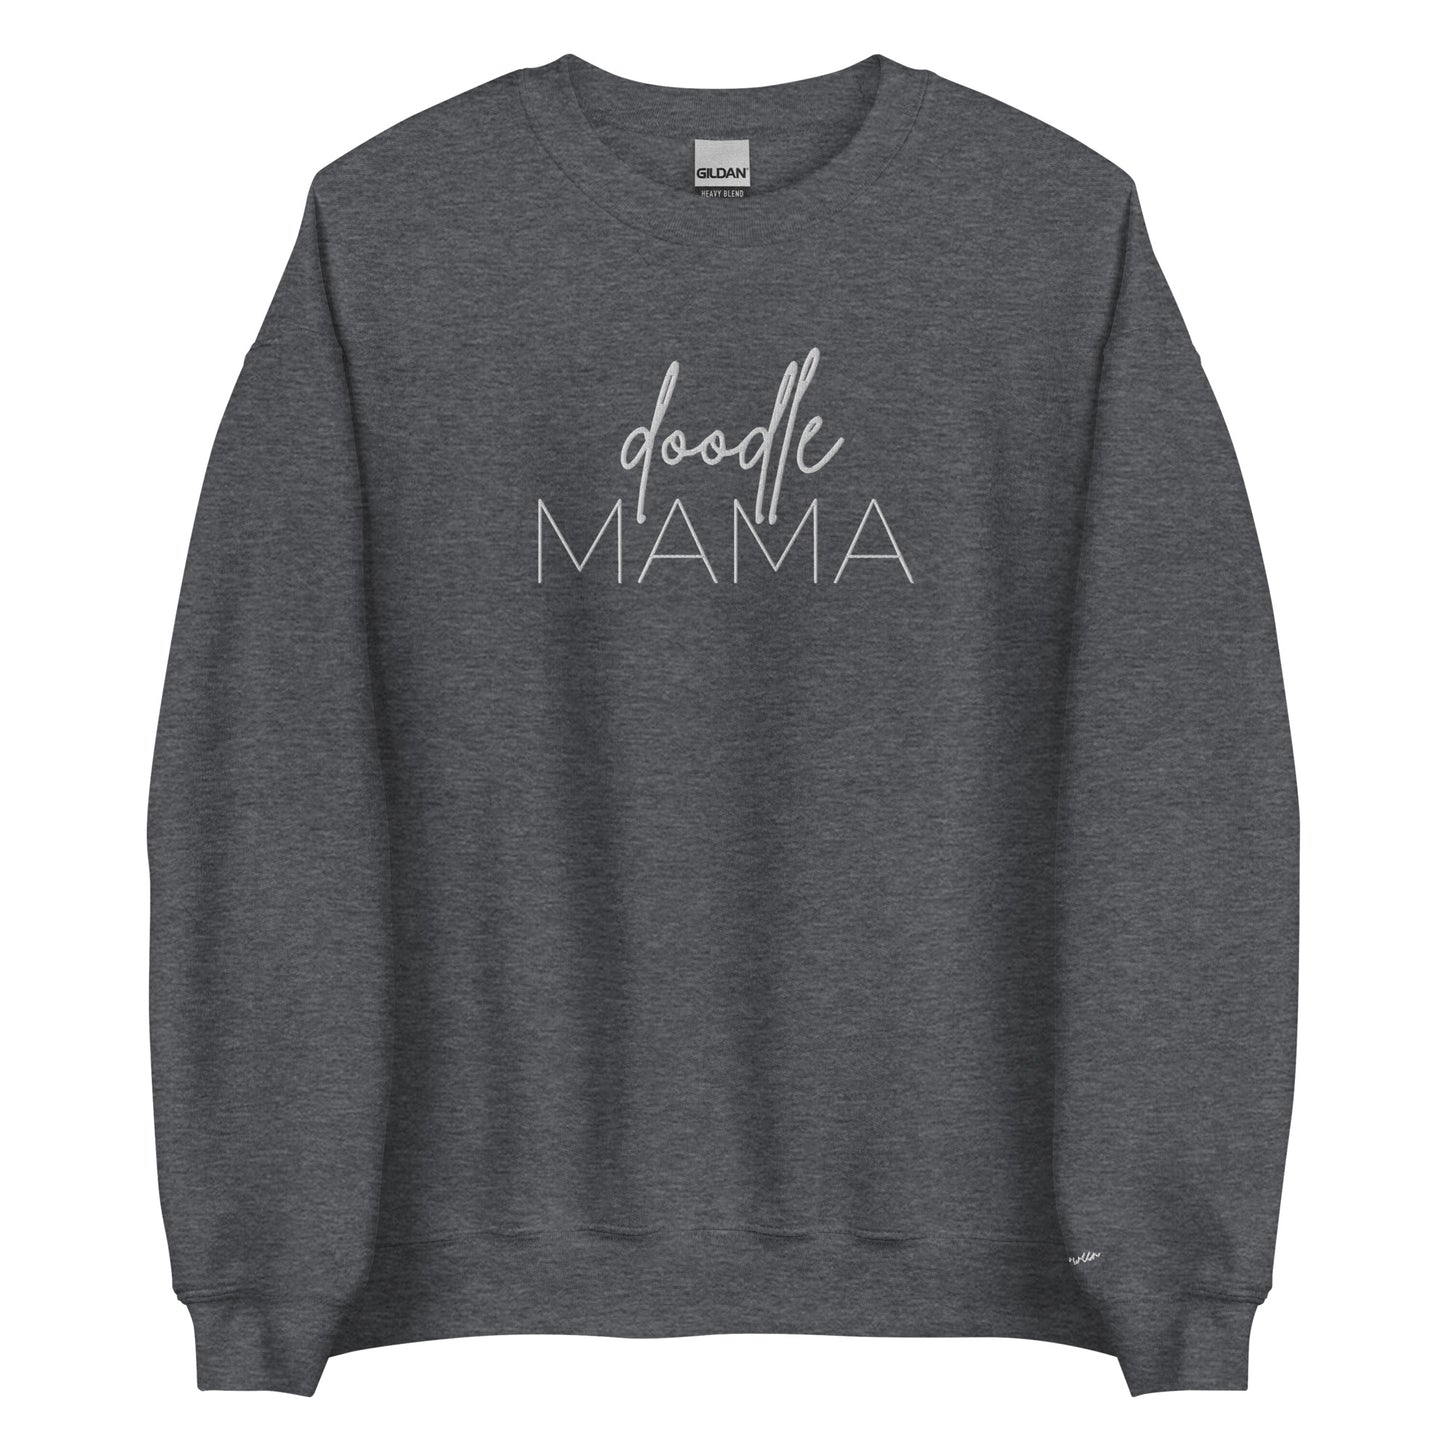 Embroidered Sweatshirt - DOODLE MAMA